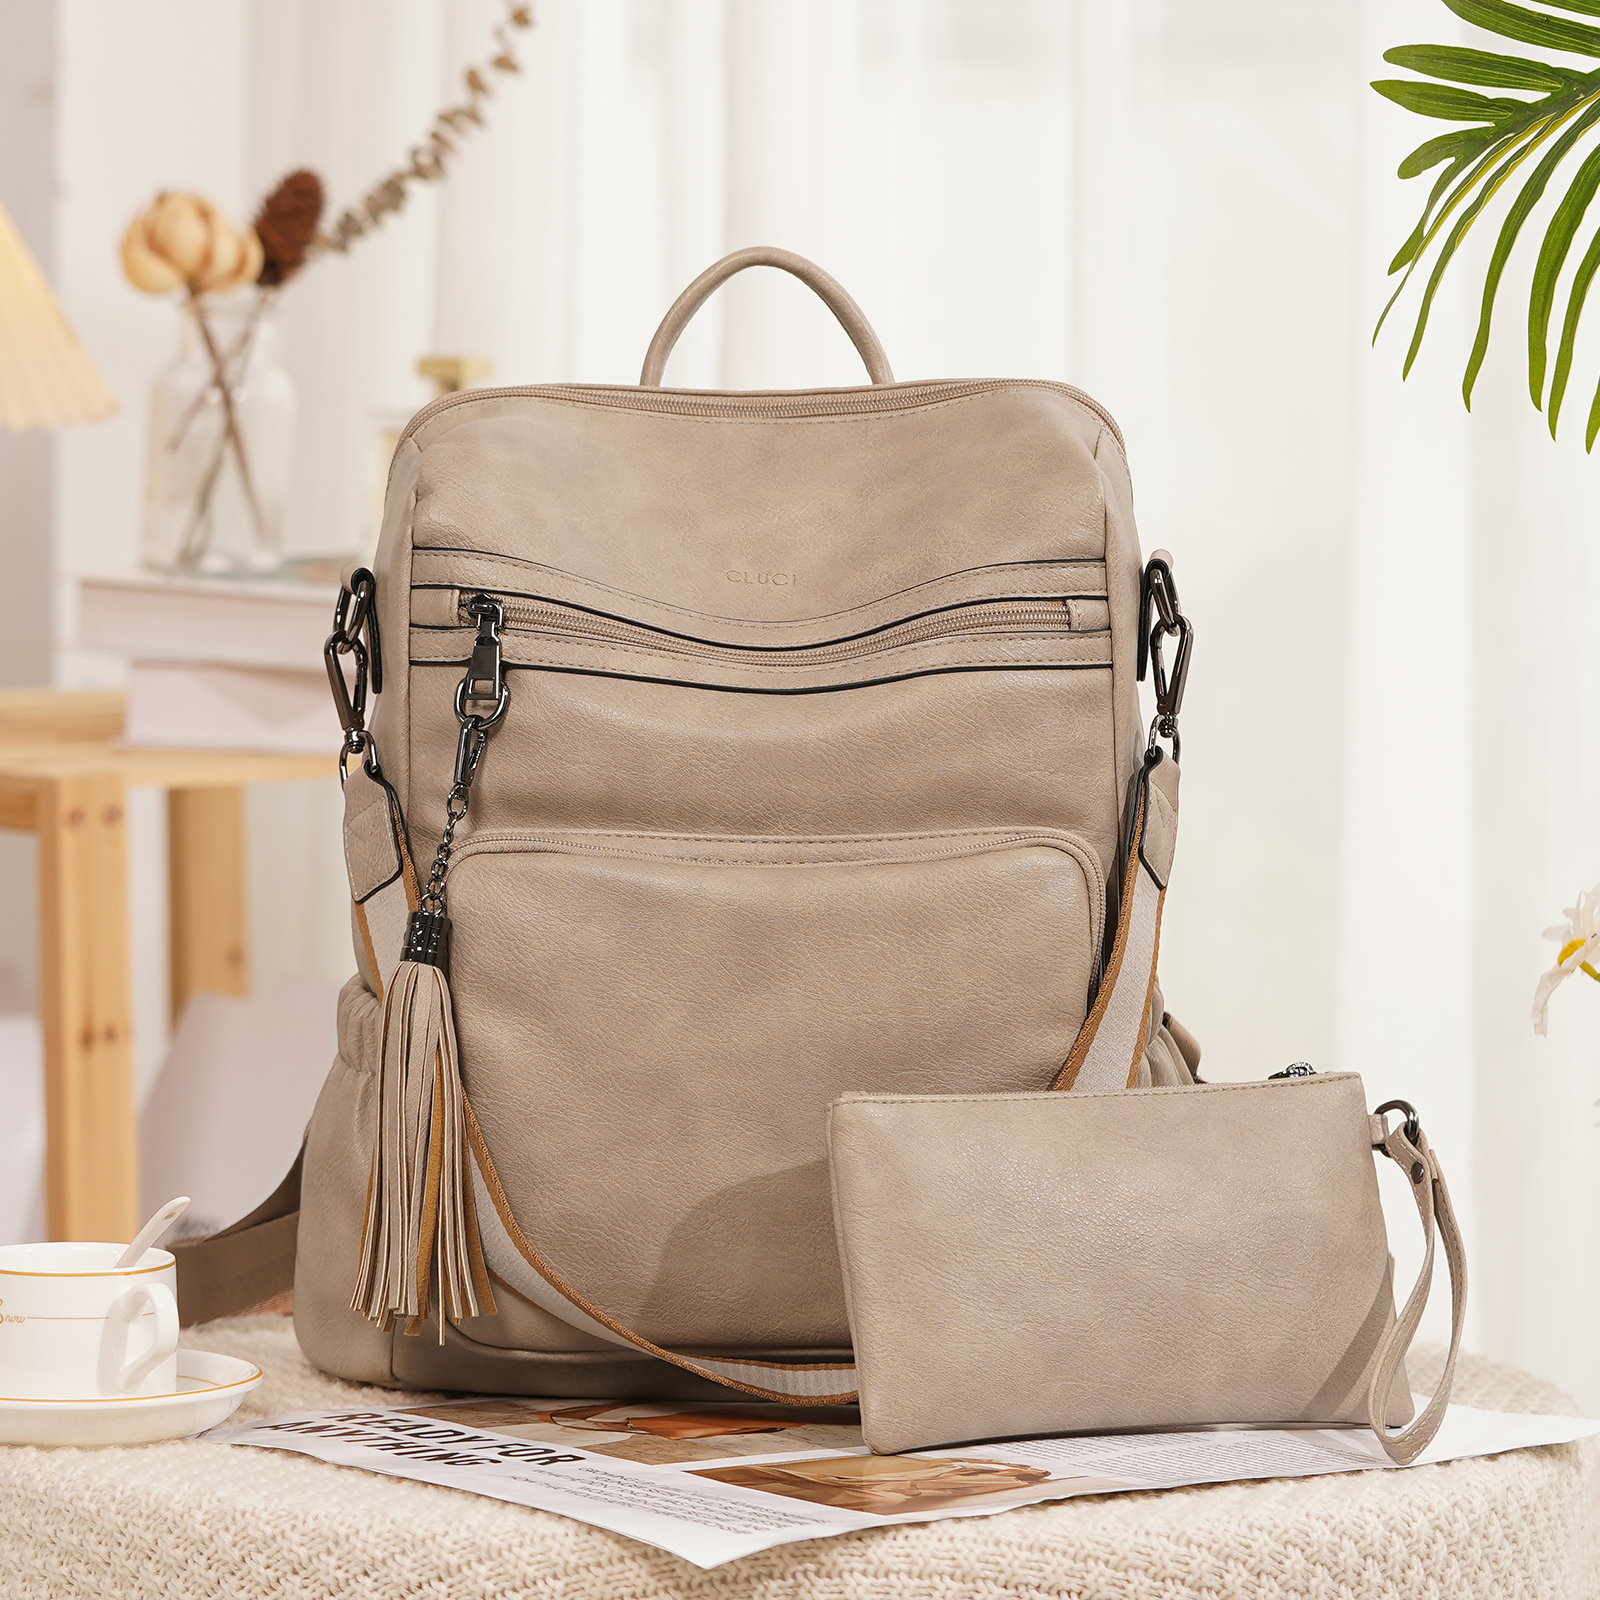 Small Backpack Bags For Ladies: स्टाइलिश और फैशनेबल हैं ये वूमेंस बैग, ऑफिस  के लिए भी हैं काफी बढ़िया - small backpack bags for ladies available on  amazon - Navbharat Times